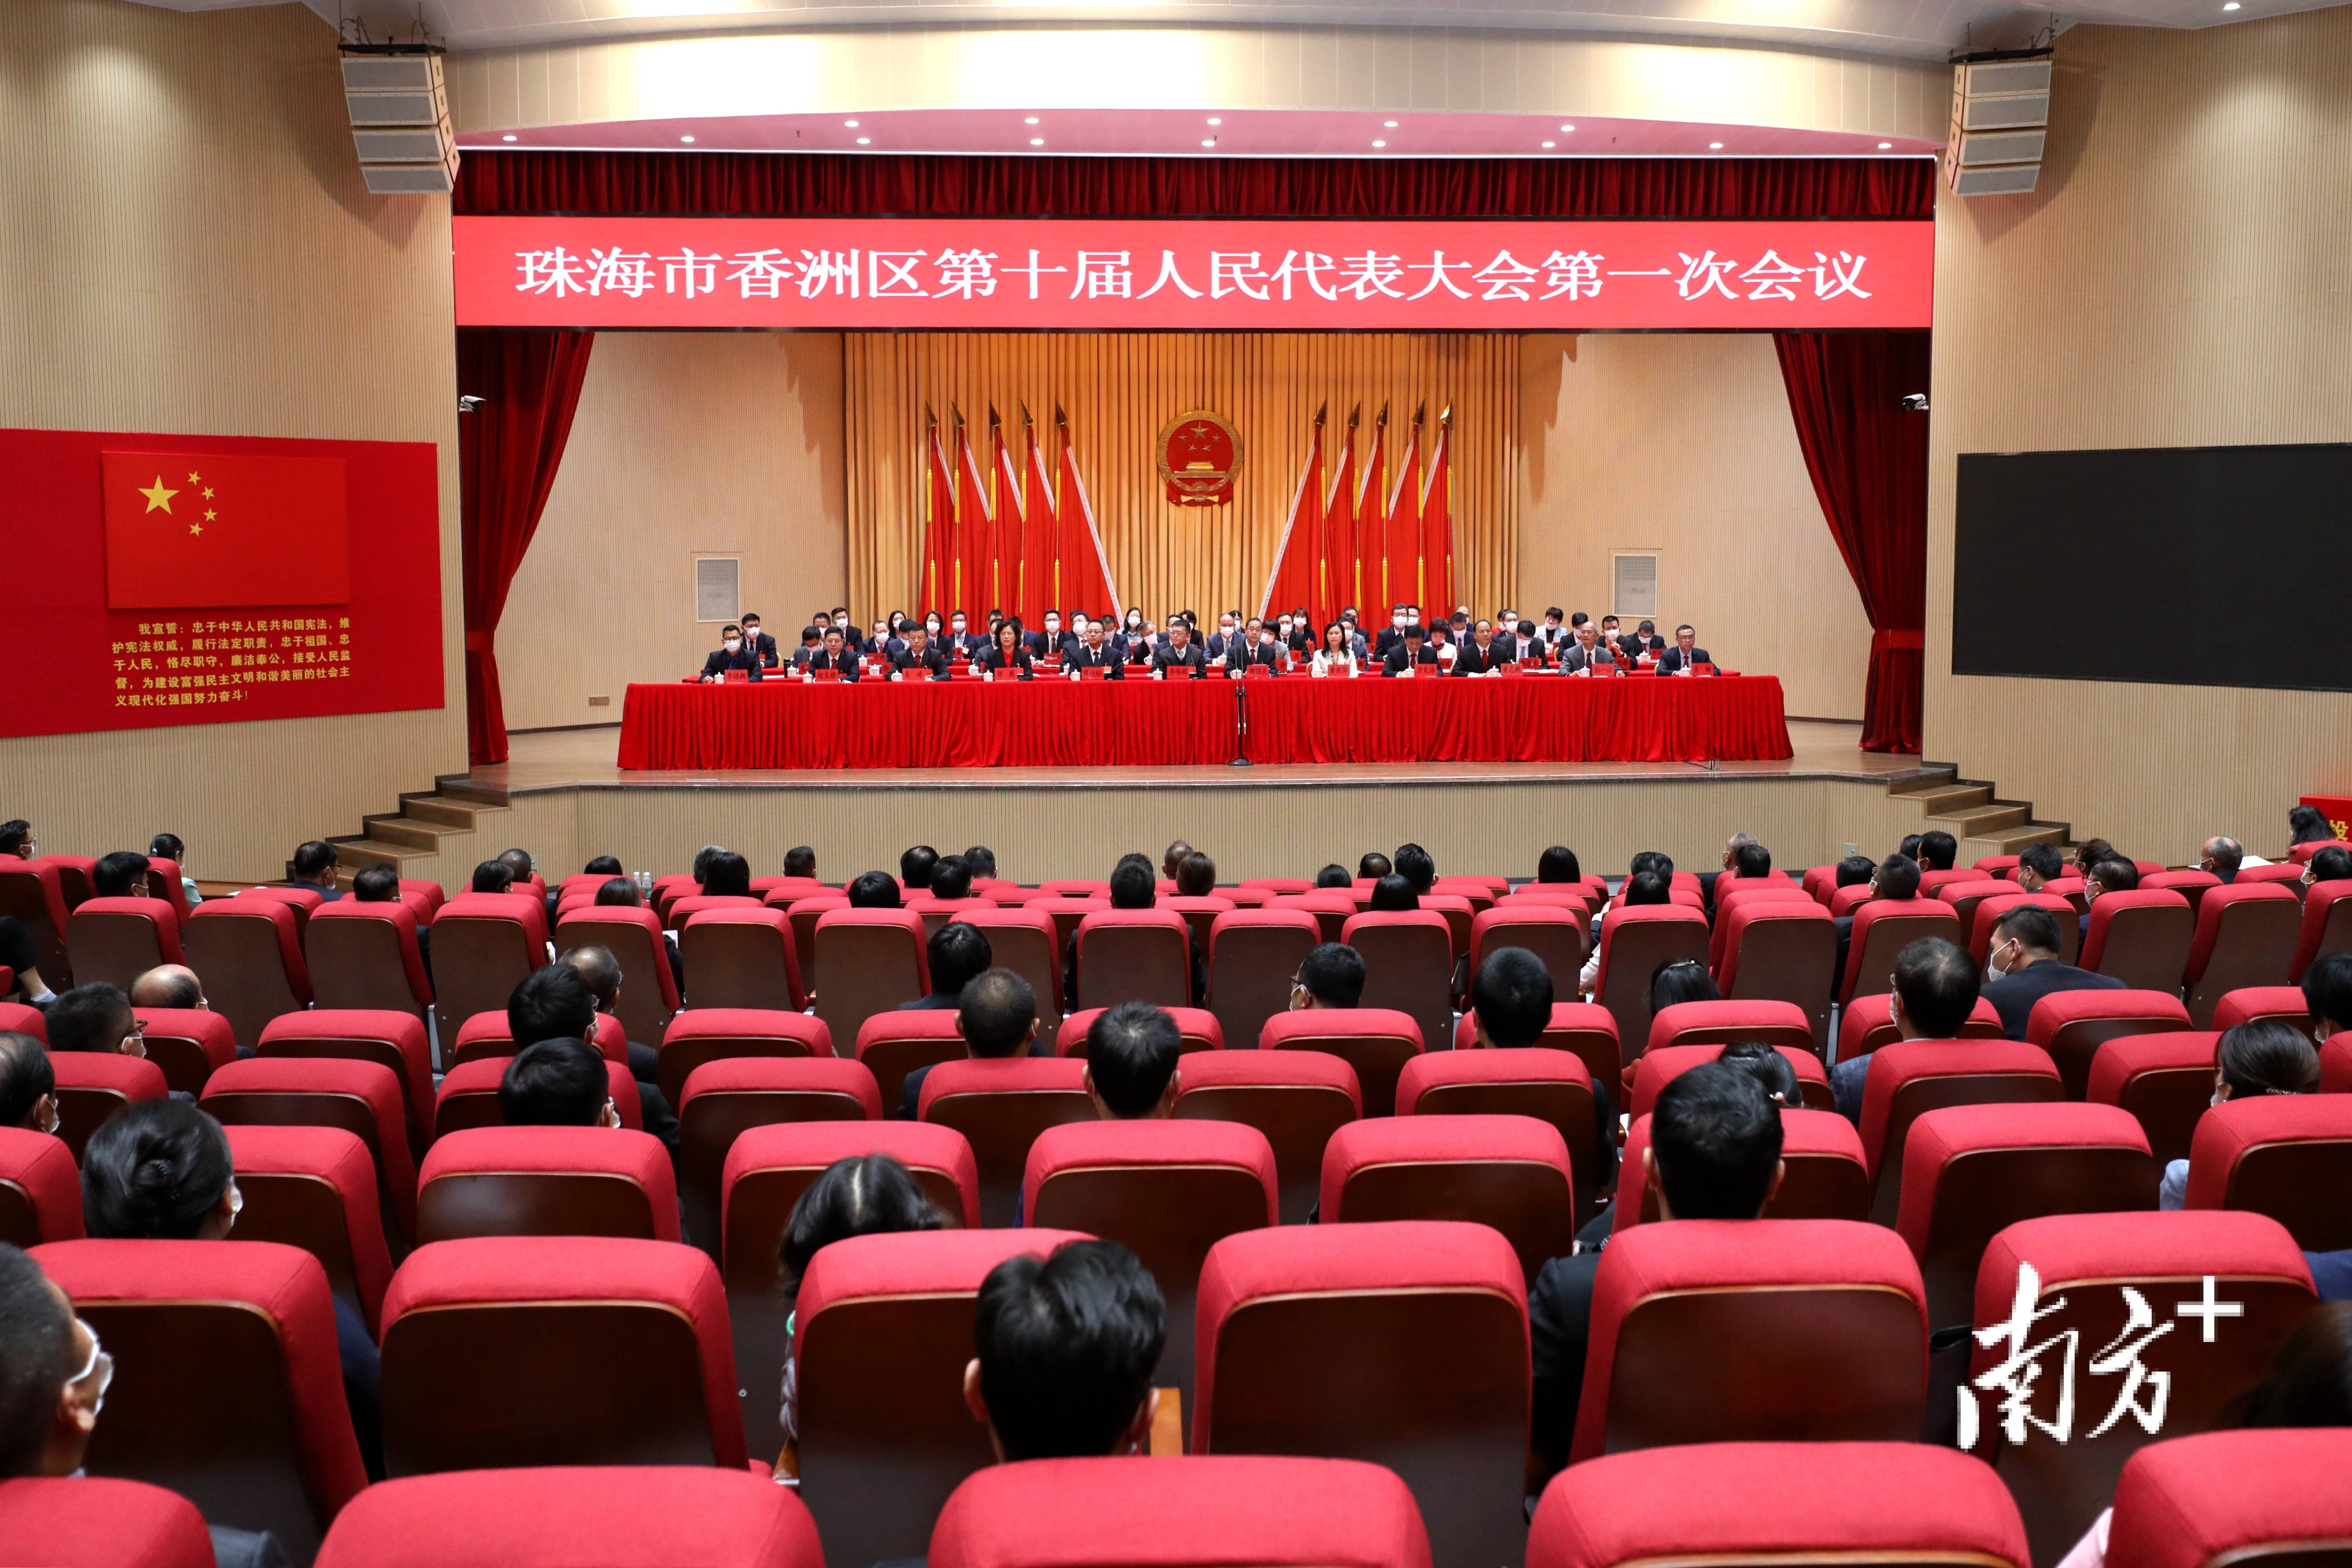 11月25日下午,珠海市香洲区十届人大一次会议圆满完成各项议程后,在